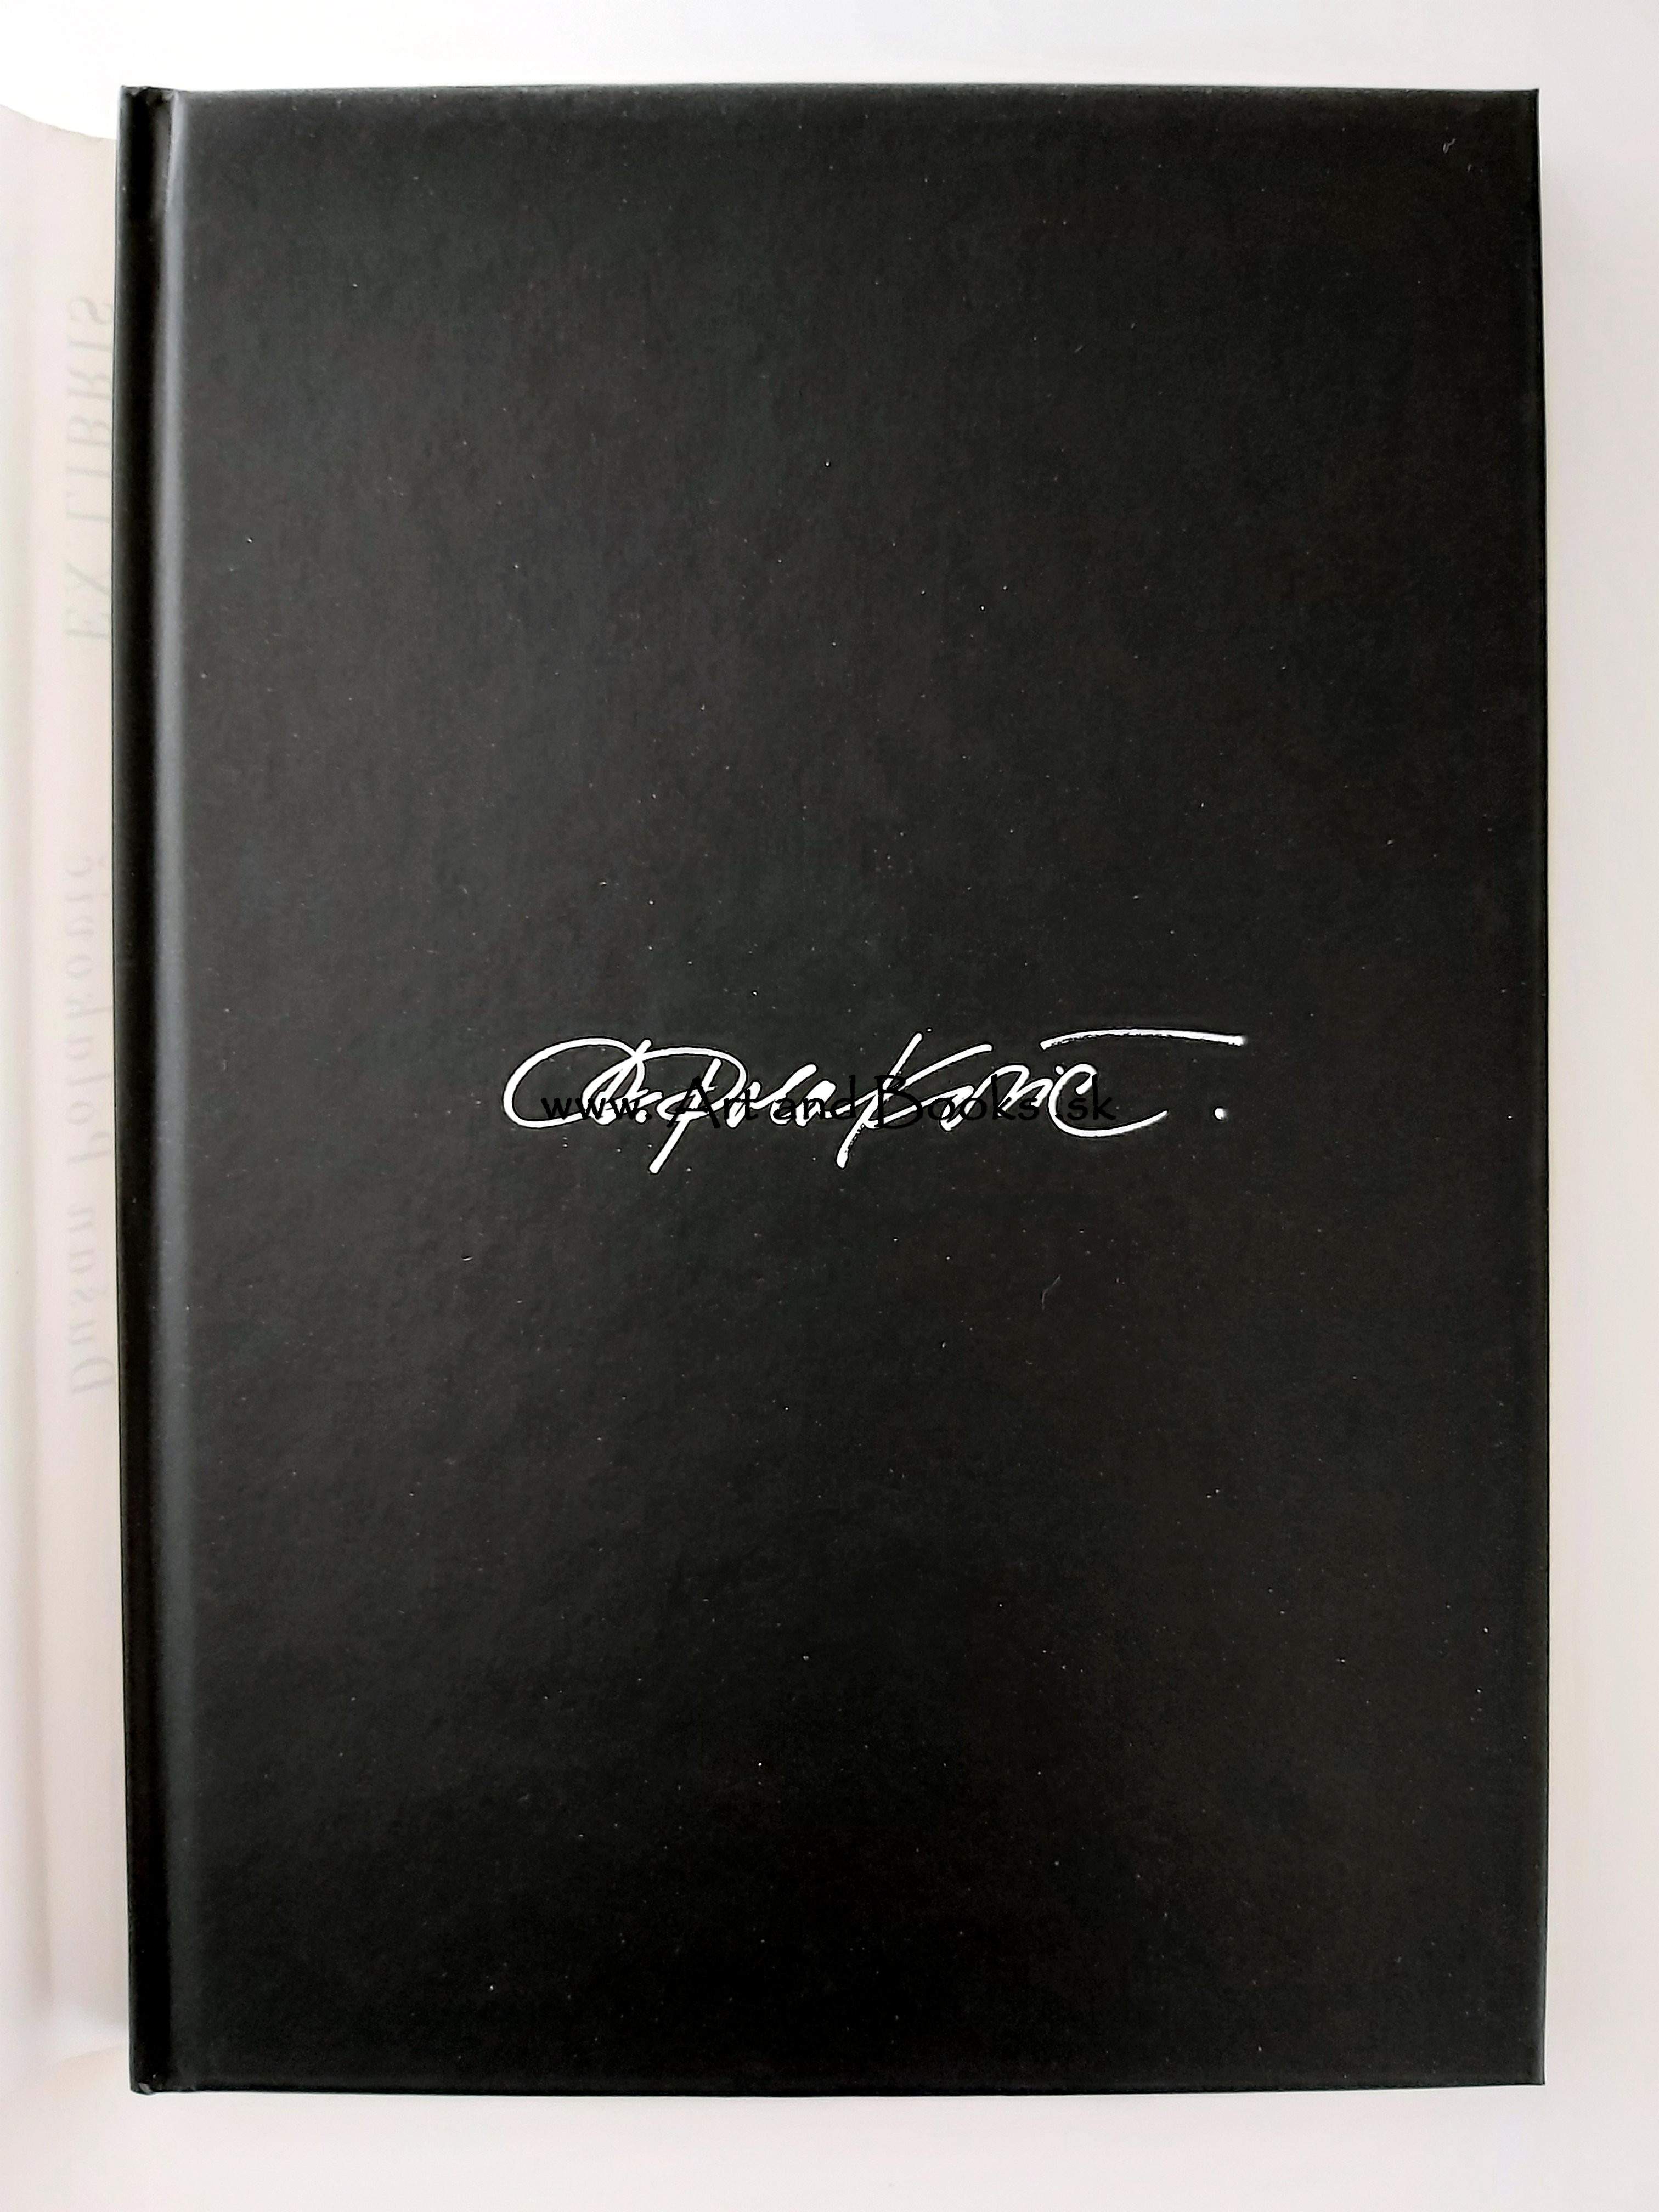 Marián Potrok - Ex libris Dušan Polakovič (sold/predané) ● 9493